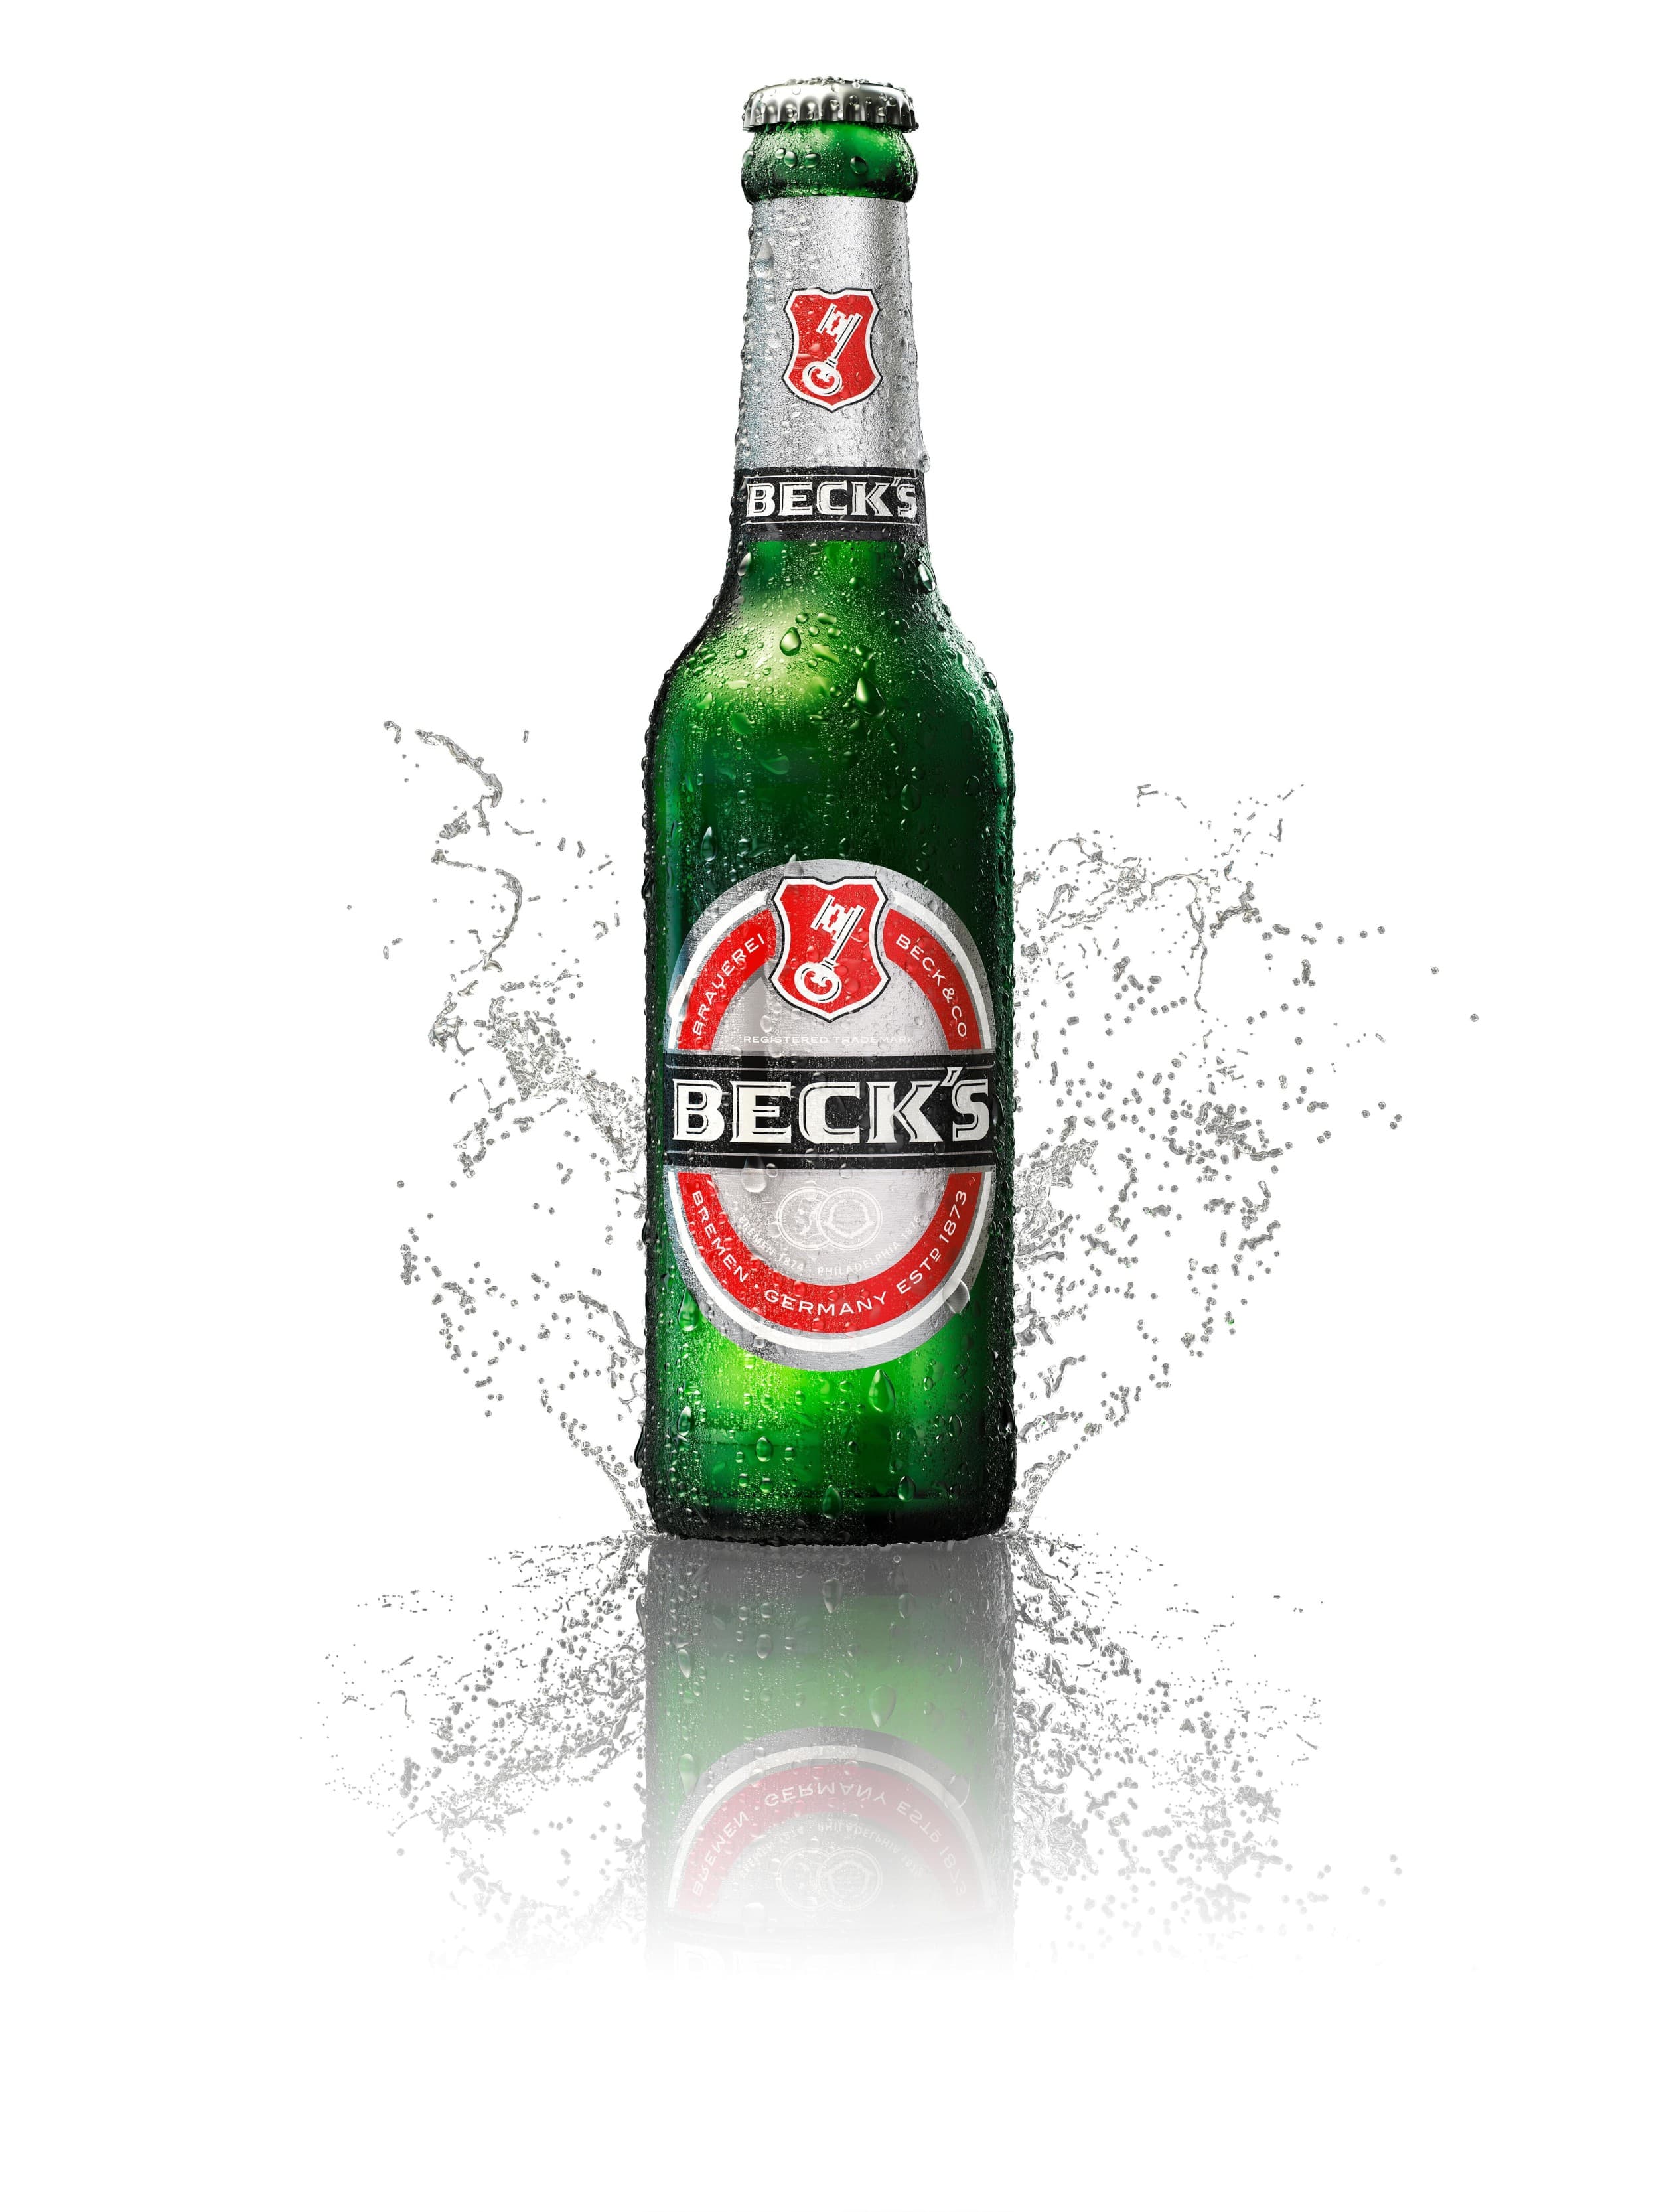 Bottle of Becks with splash